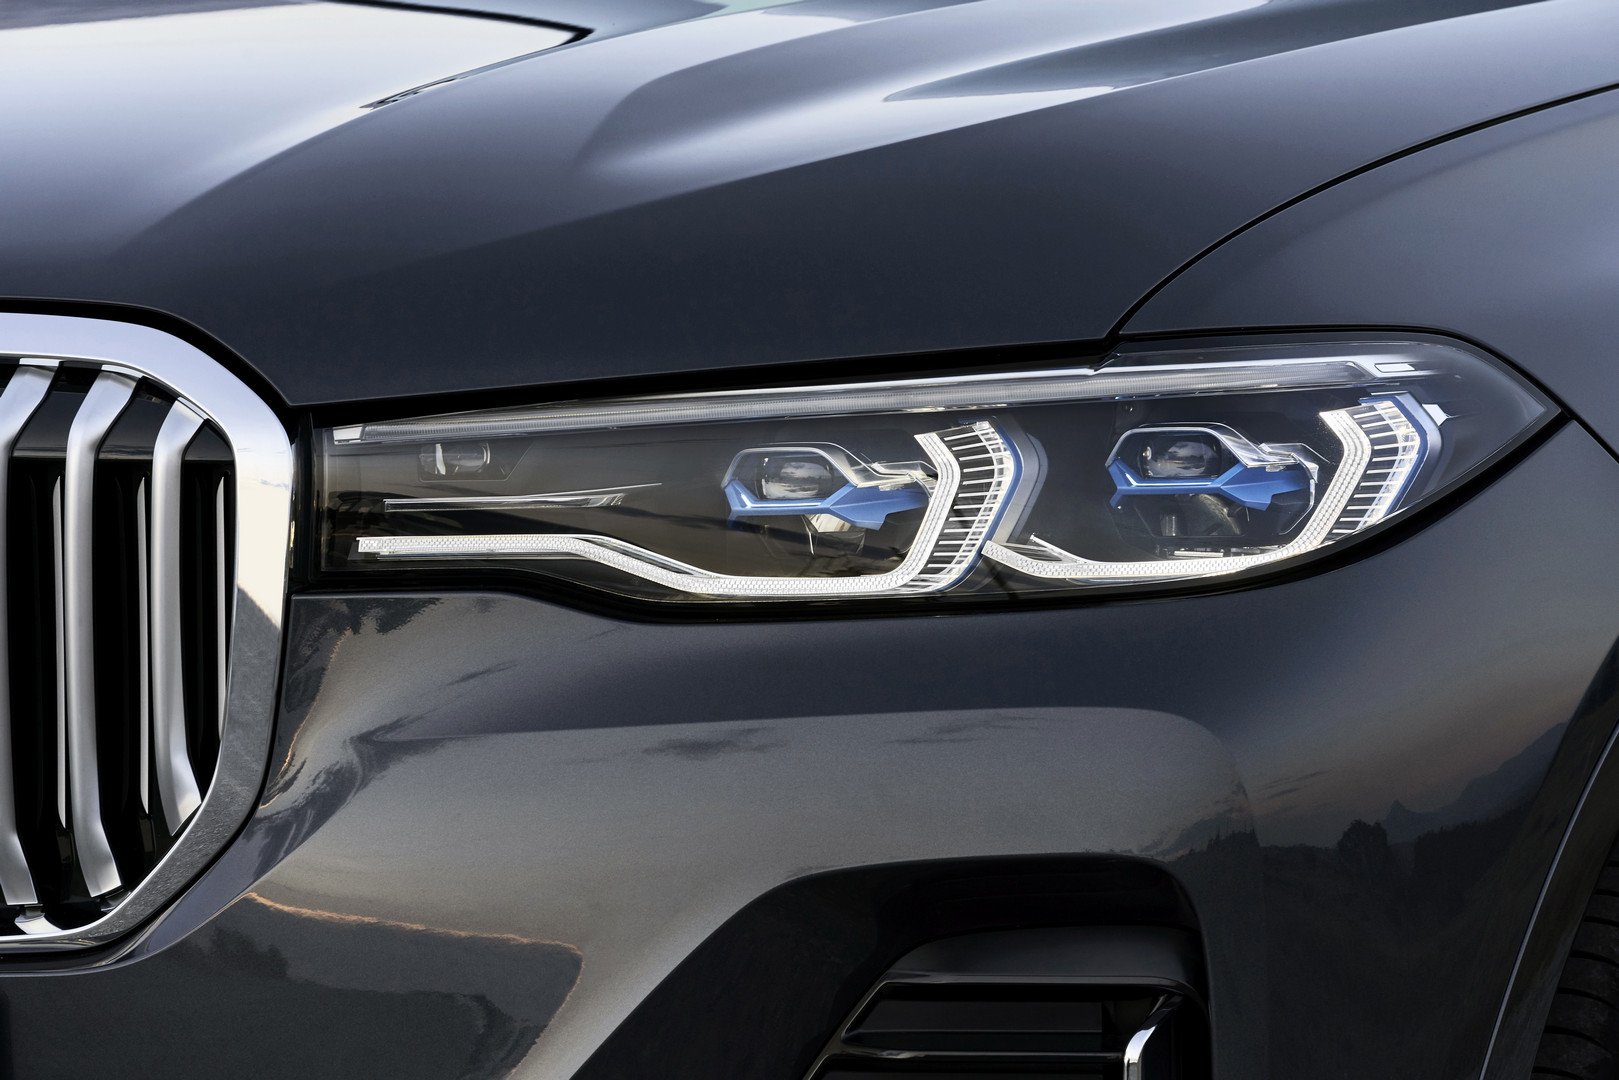 2019 BMW X7 Laser Headights